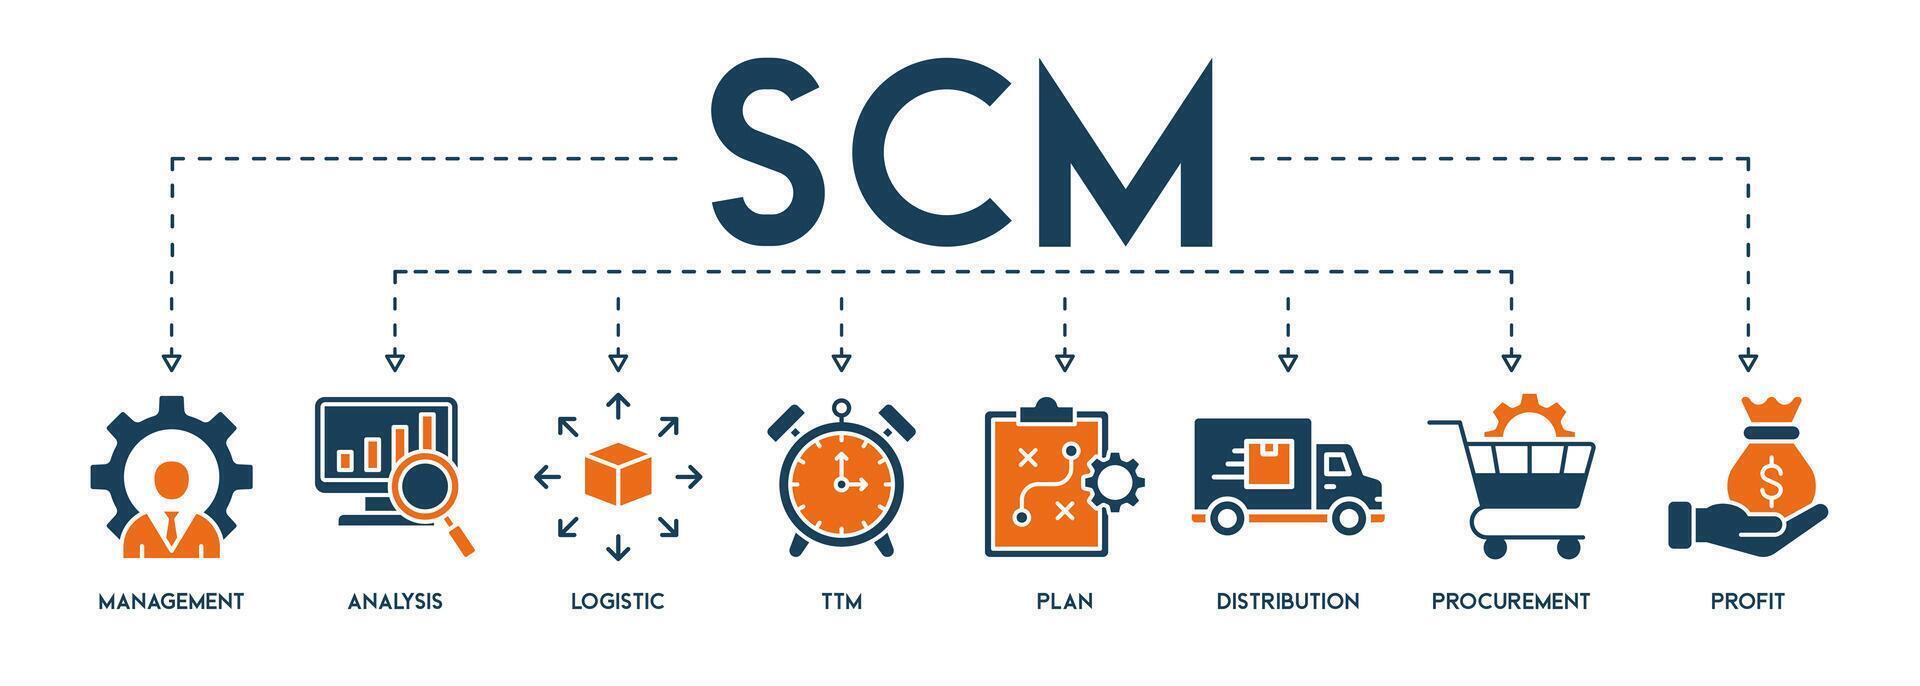 scm Banner Netz Symbol Vektor Illustration Konzept zum liefern Kette Verwaltung mit Symbol und Symbol von Management, Analyse, Logistik, ttm, planen